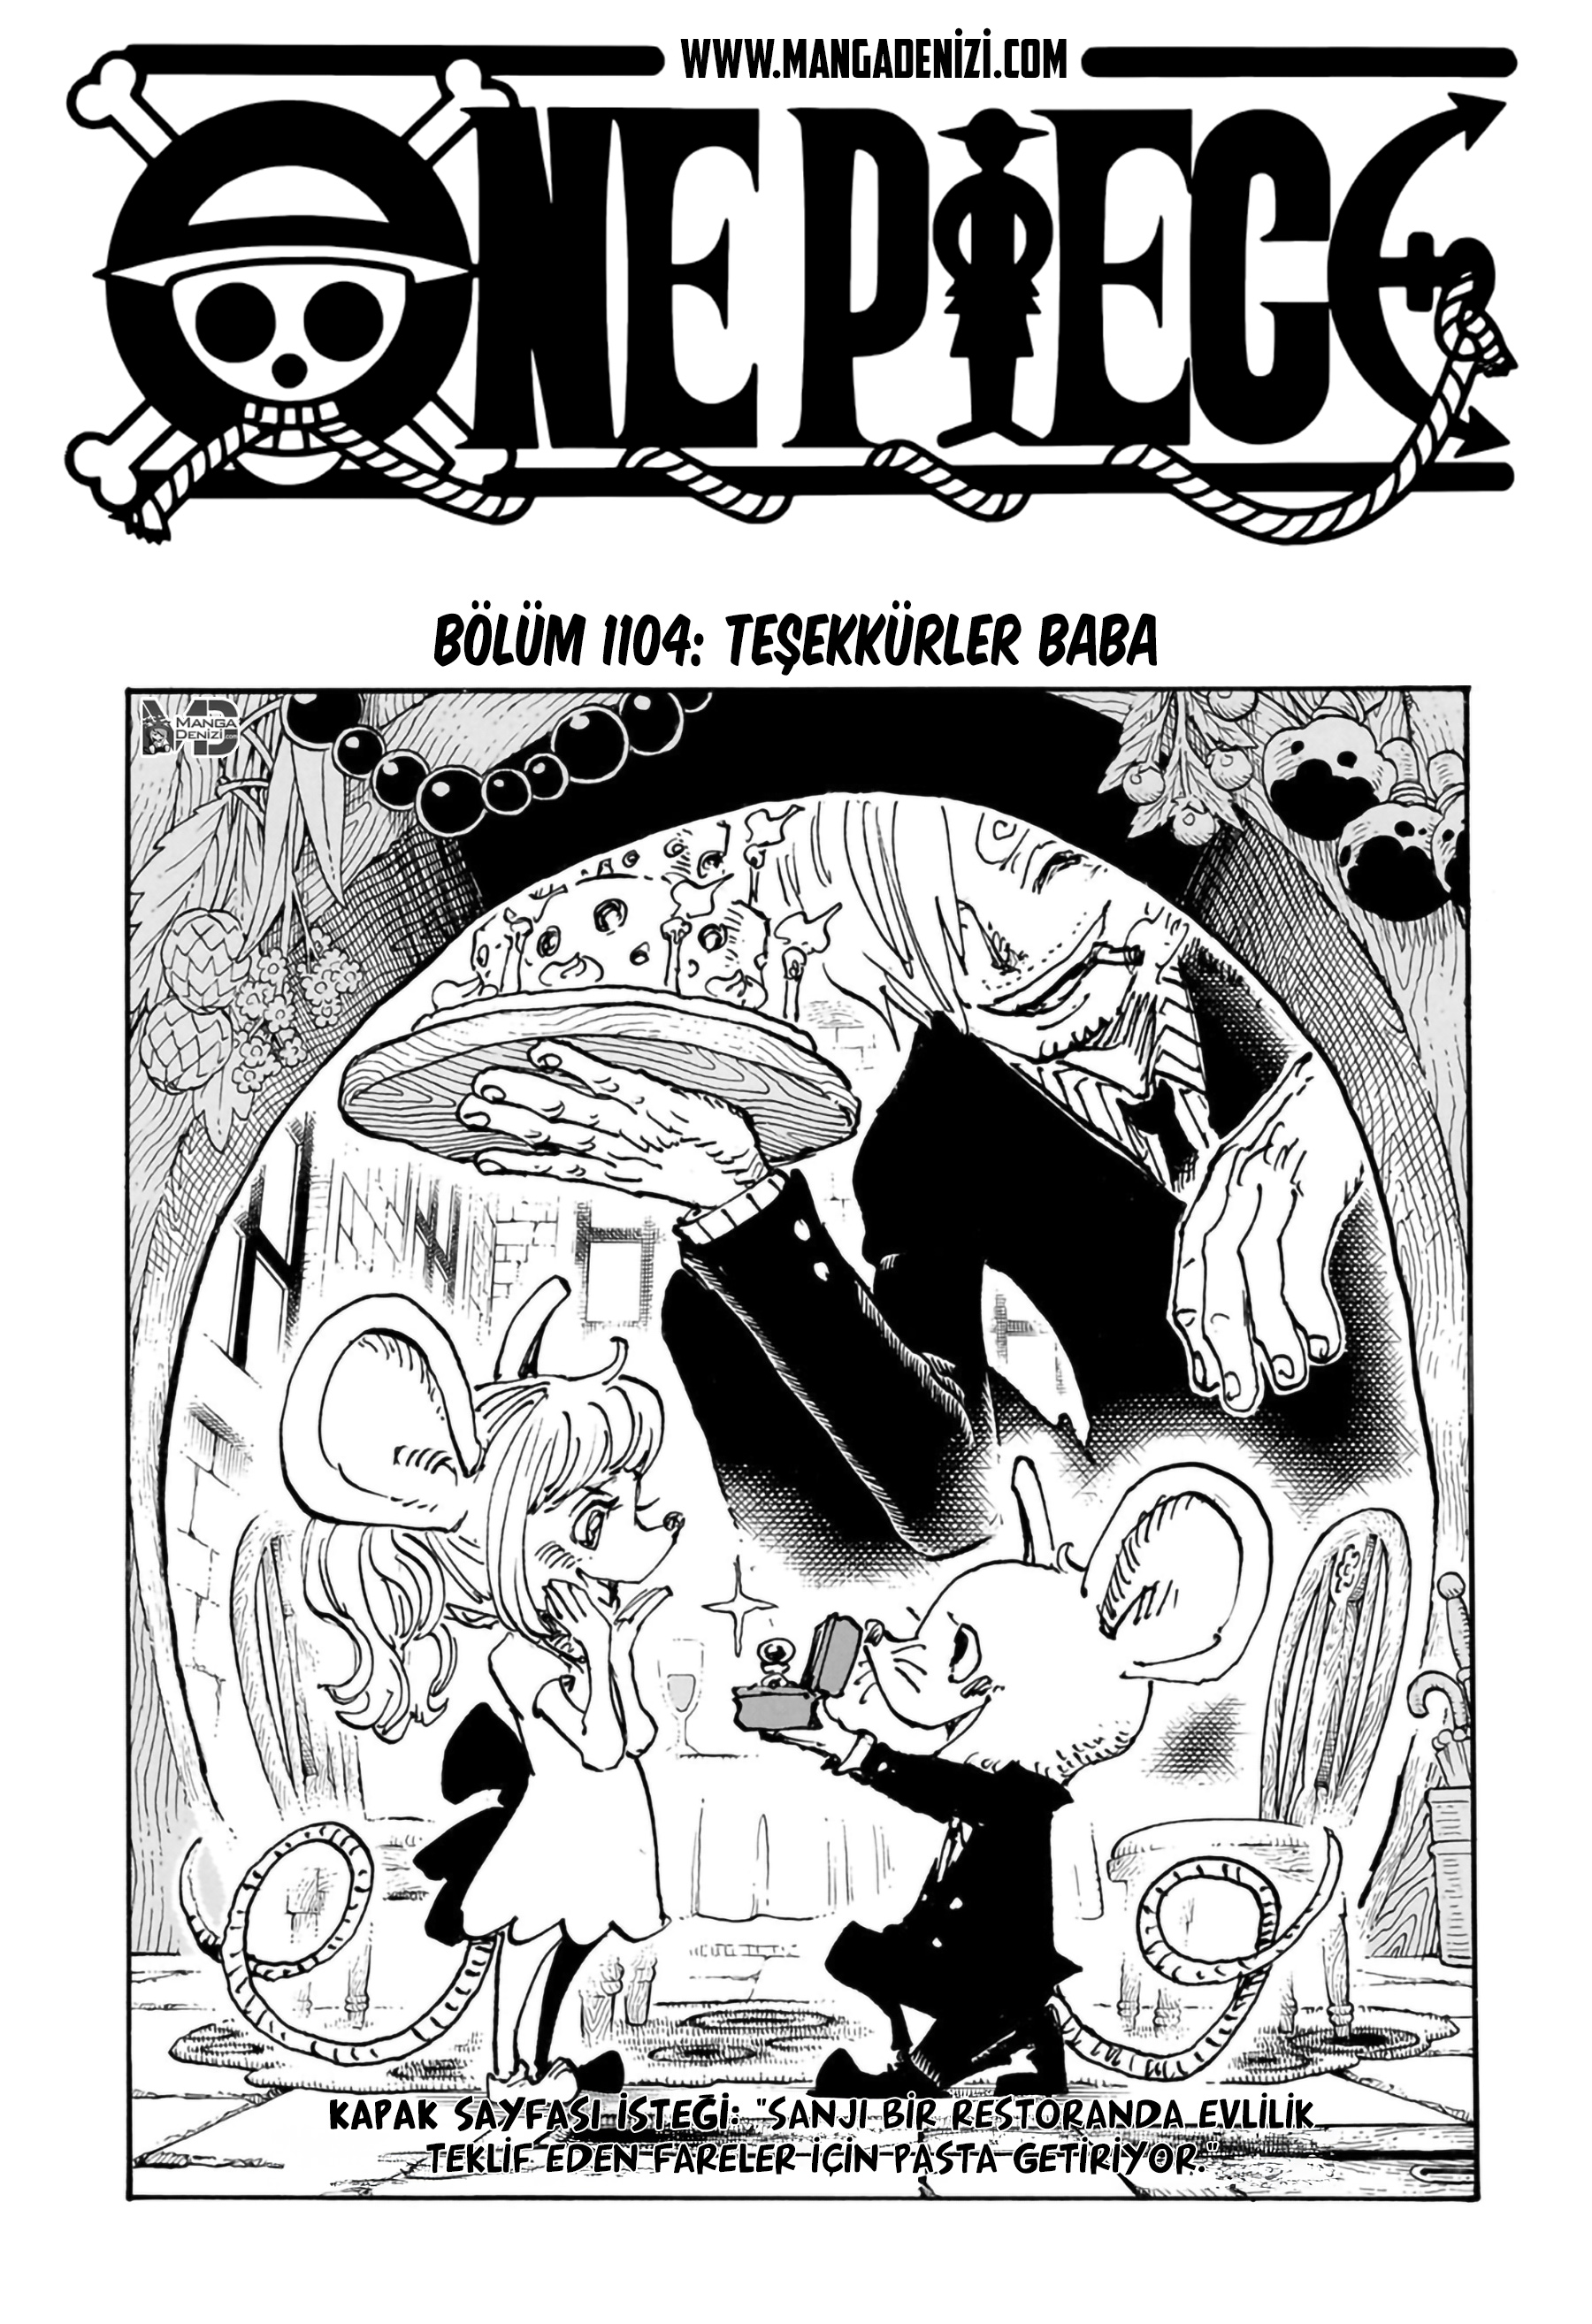 One Piece mangasının 1104 bölümünün 2. sayfasını okuyorsunuz.